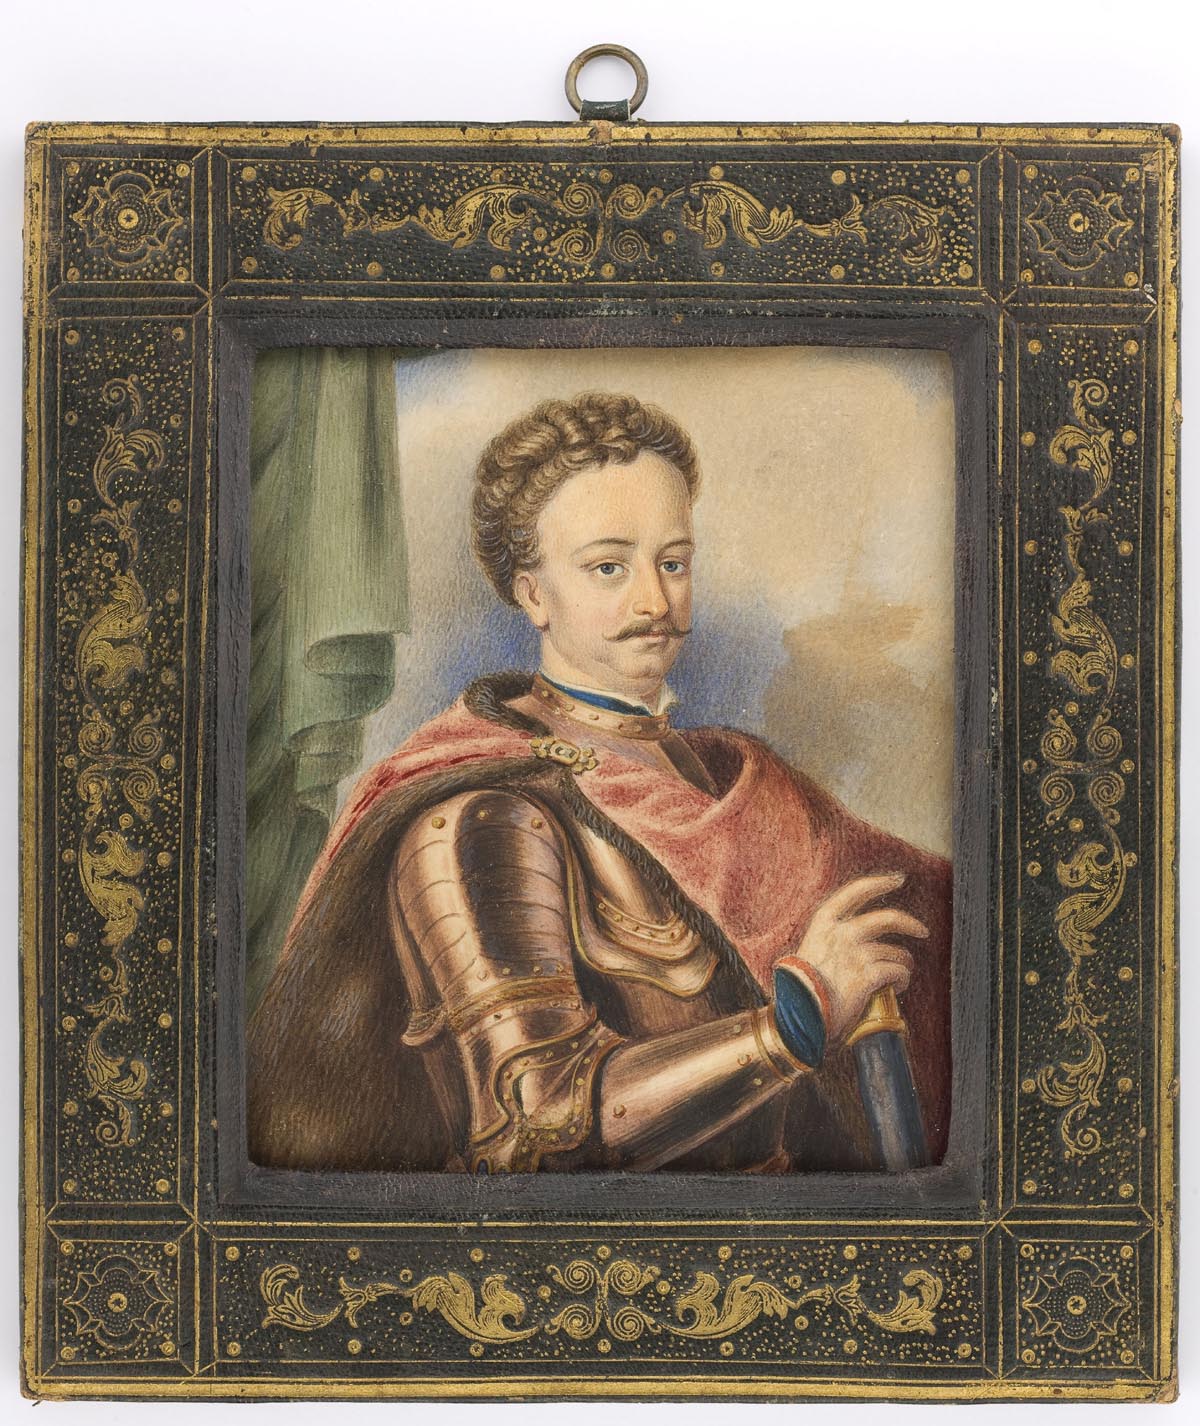 Stanisław Leszczyński (1677-1766) w młodości jako wojewoda poznański, chorąży wielki koronny